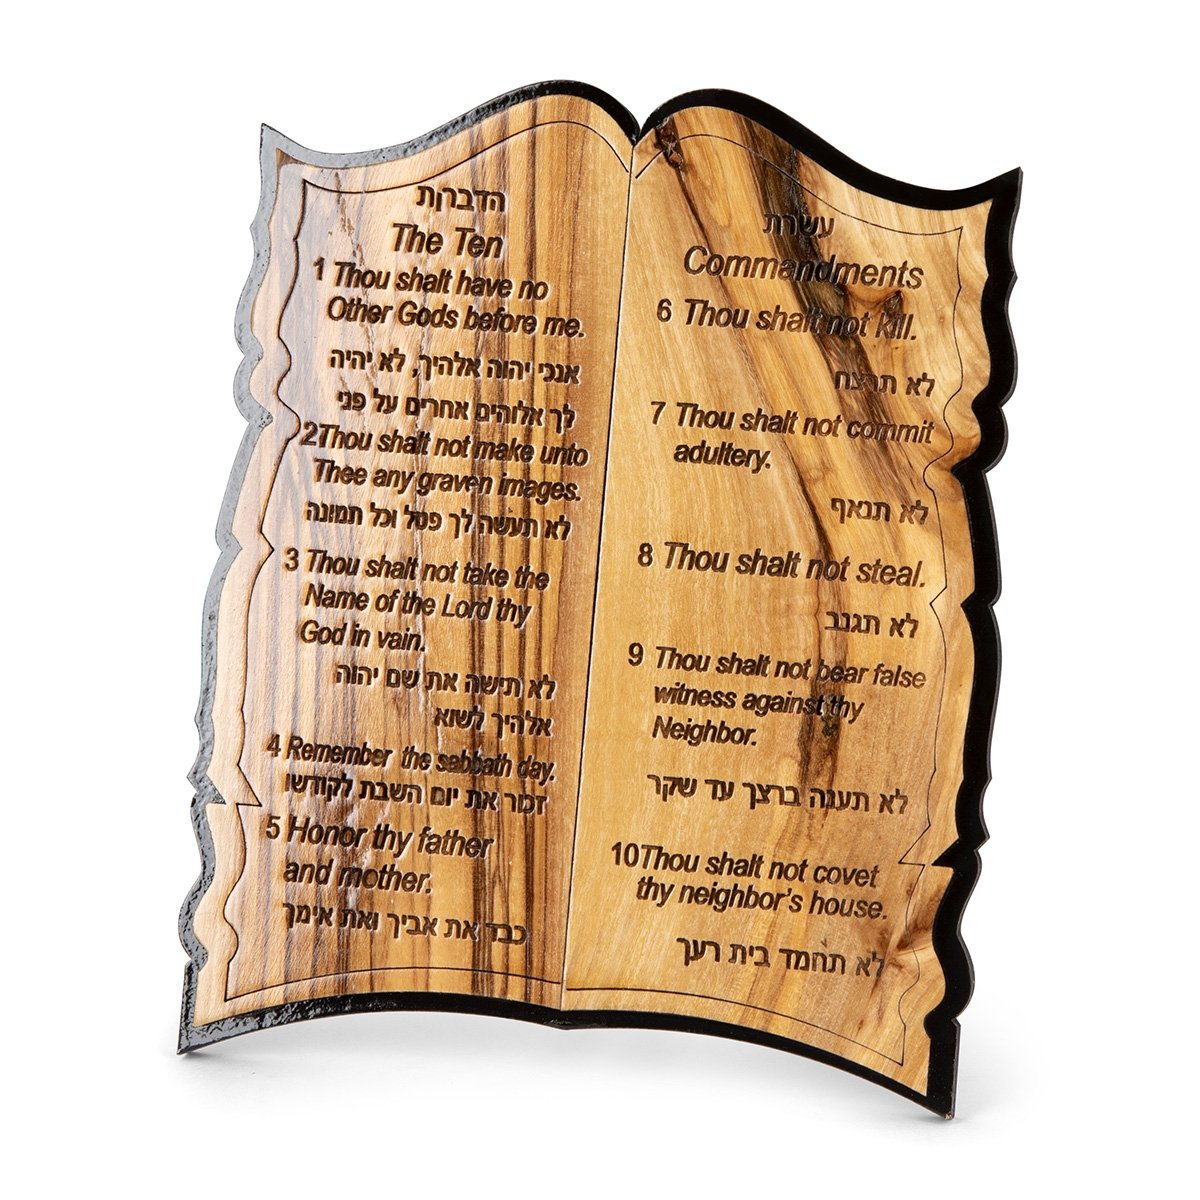 Olive Wood Desk Ornament – Ten Commandments (Hebrew/English), Home Decor